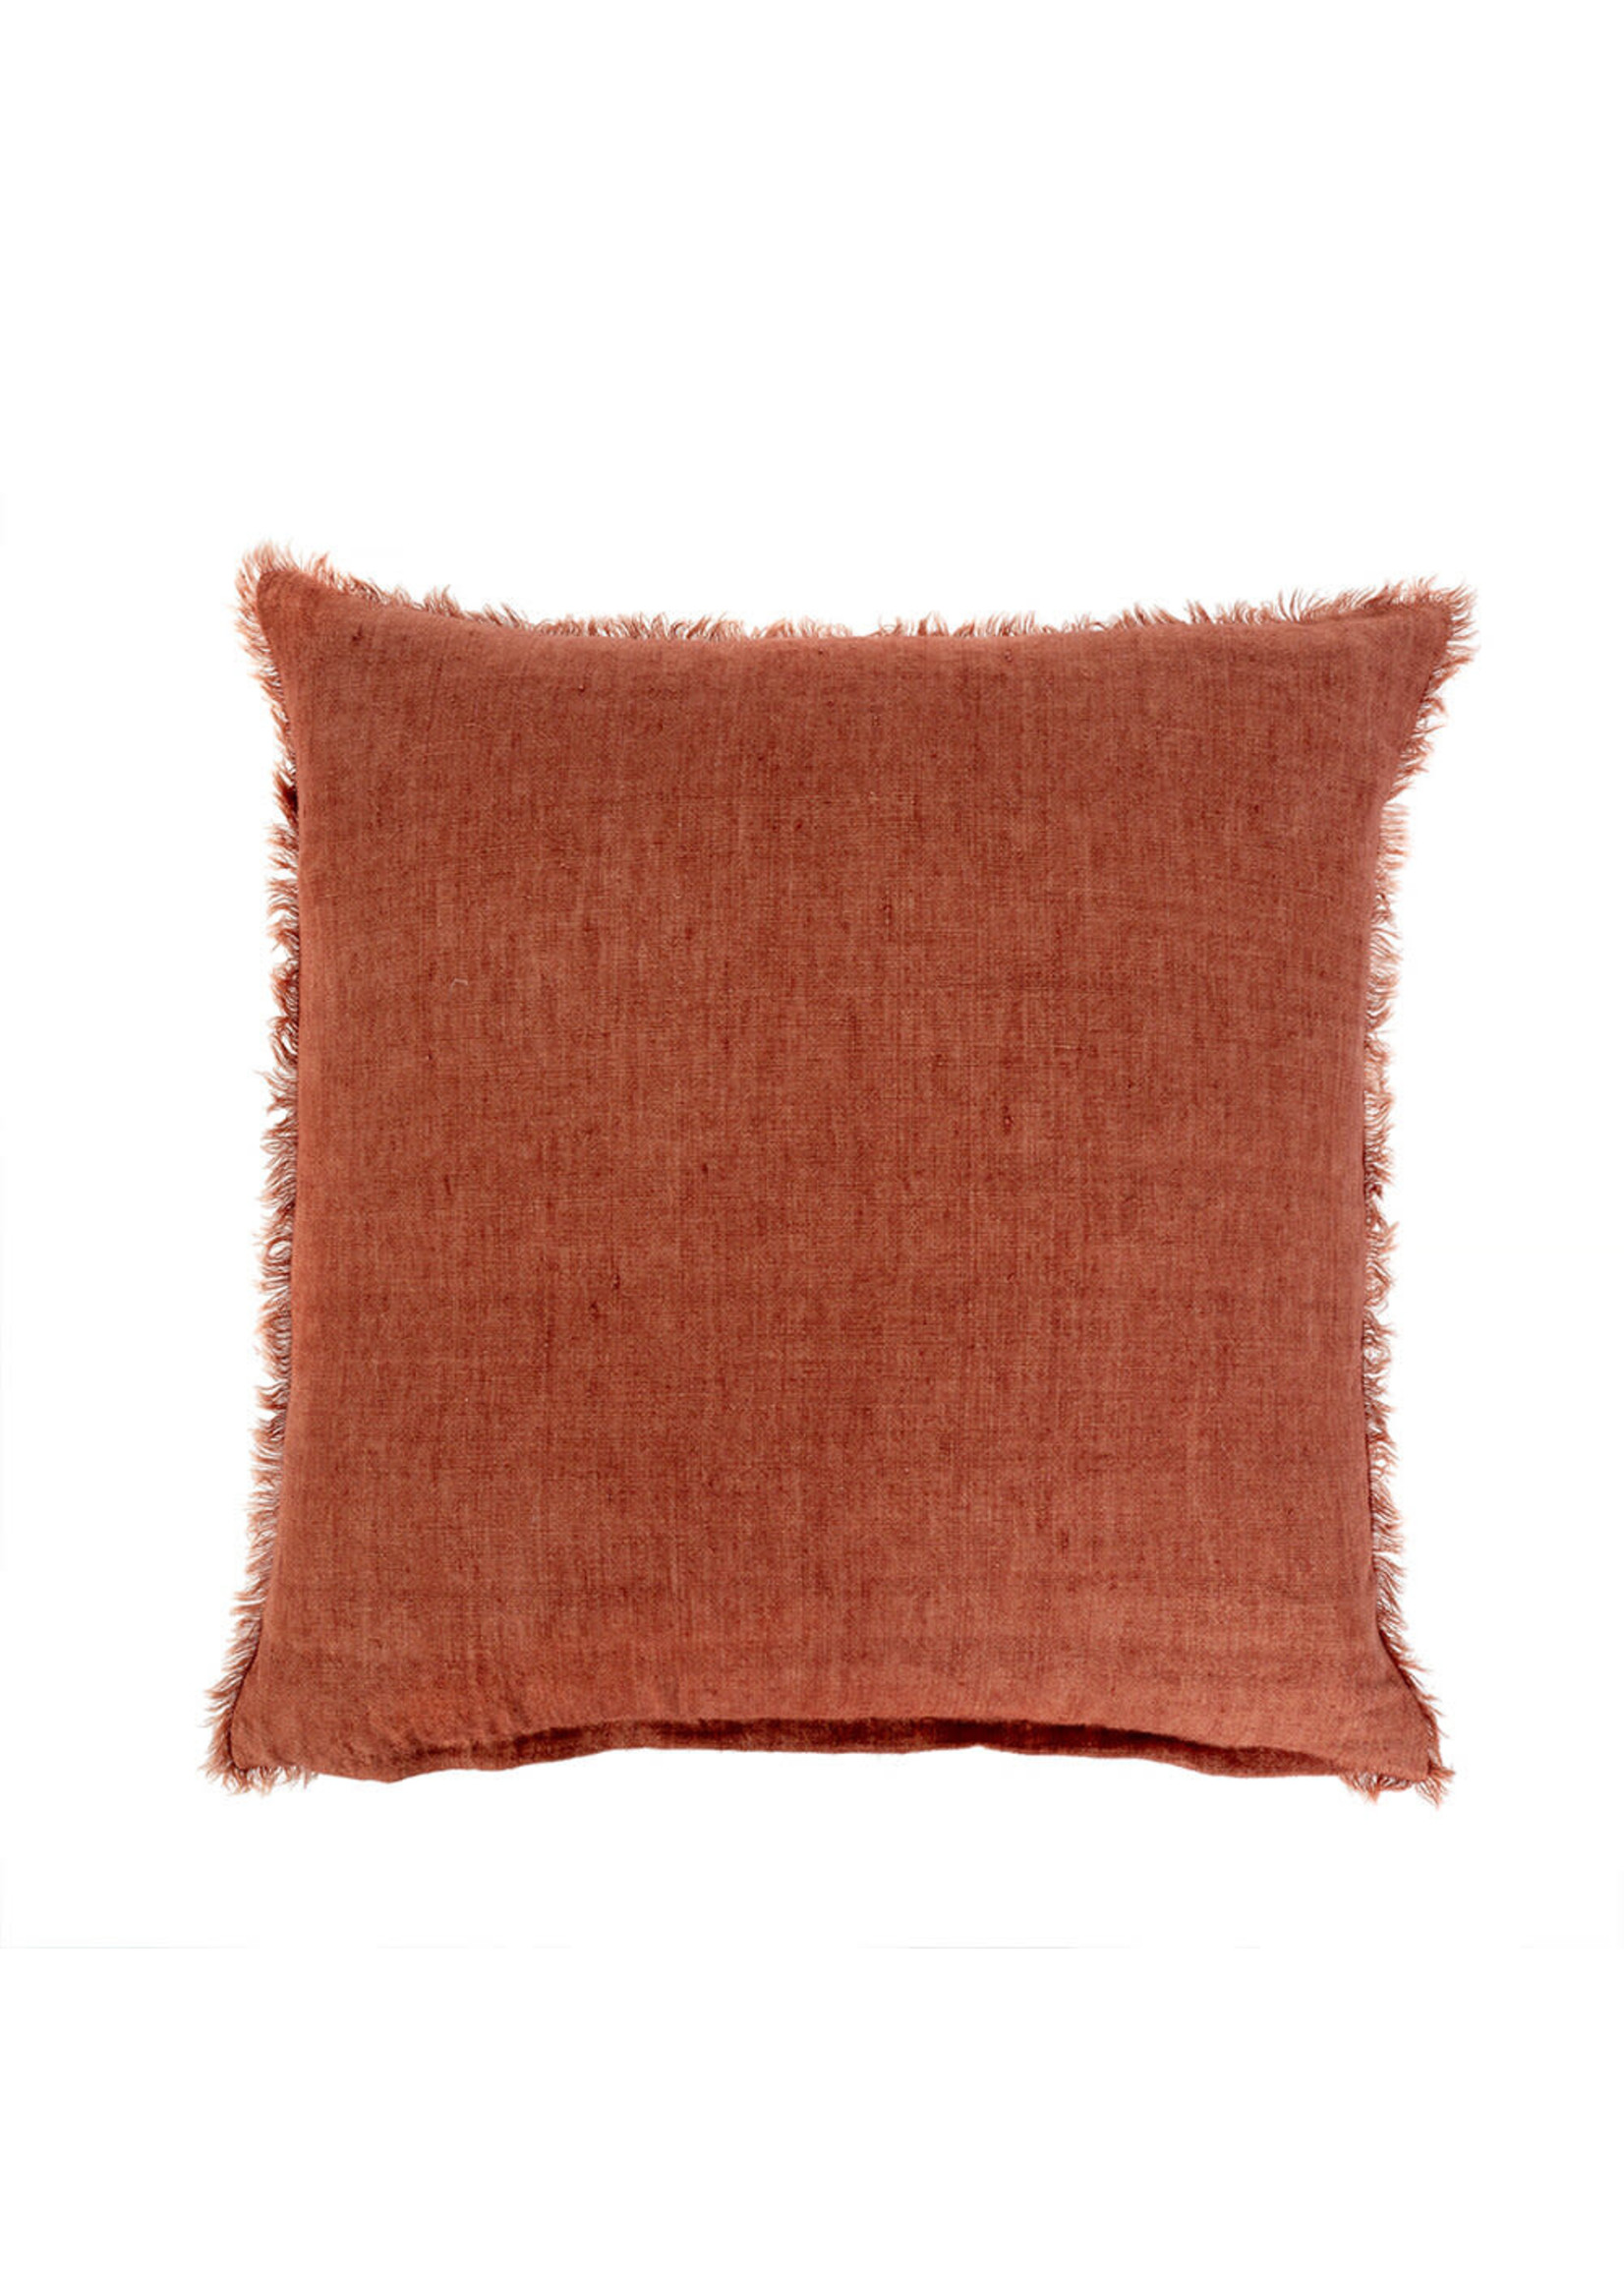 Indaba Indaba Lina Linen Throw Pillow, Rust, 24x24